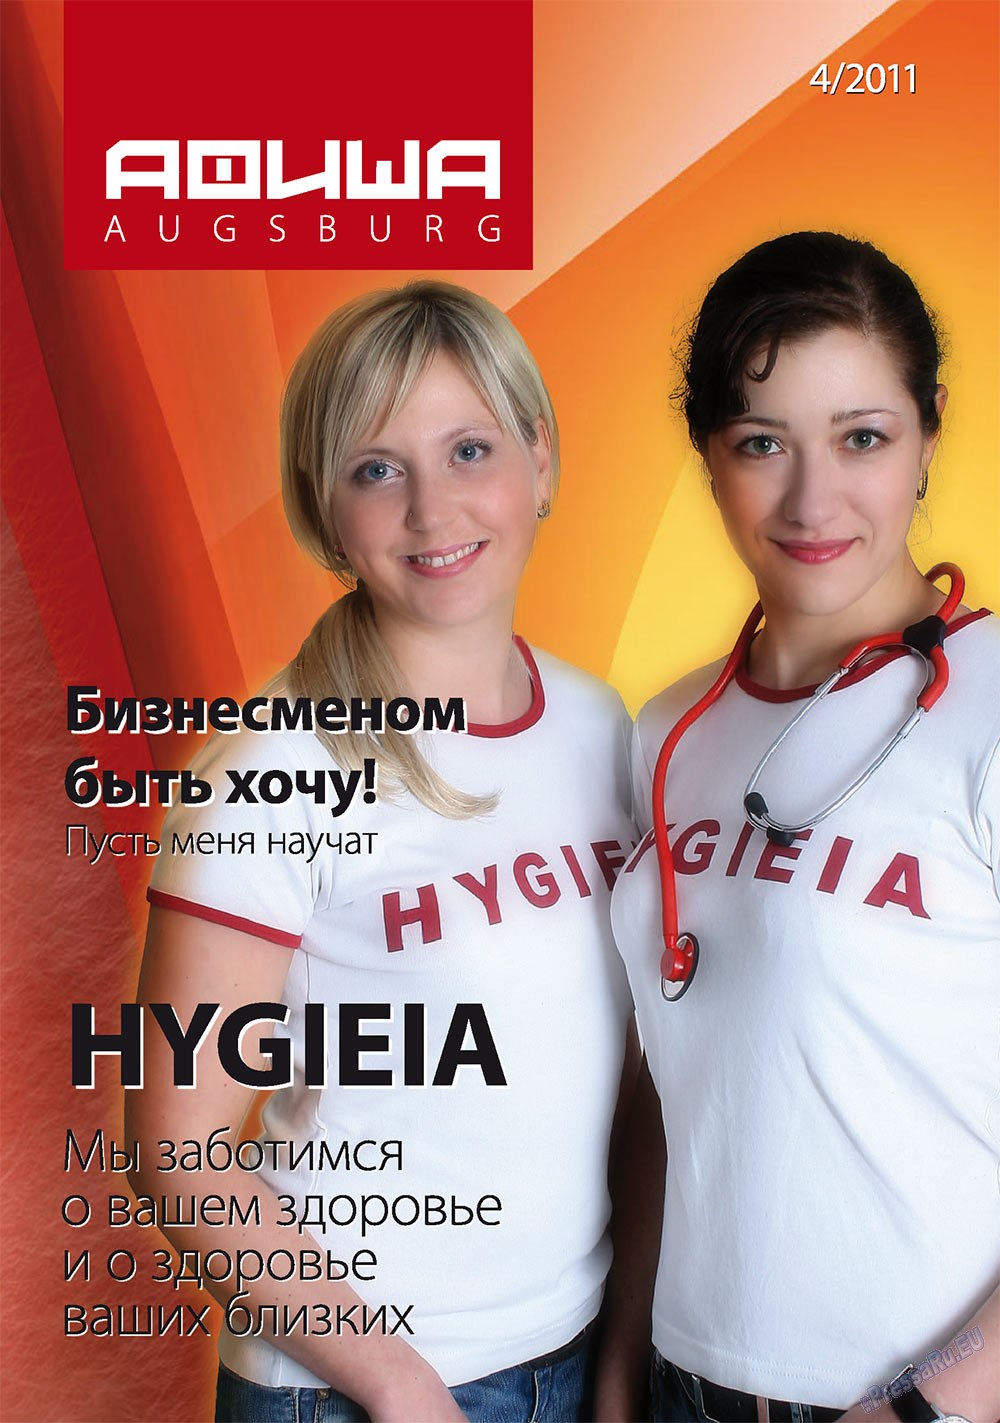 Афиша Augsburg (журнал). 2011 год, номер 4, стр. 1